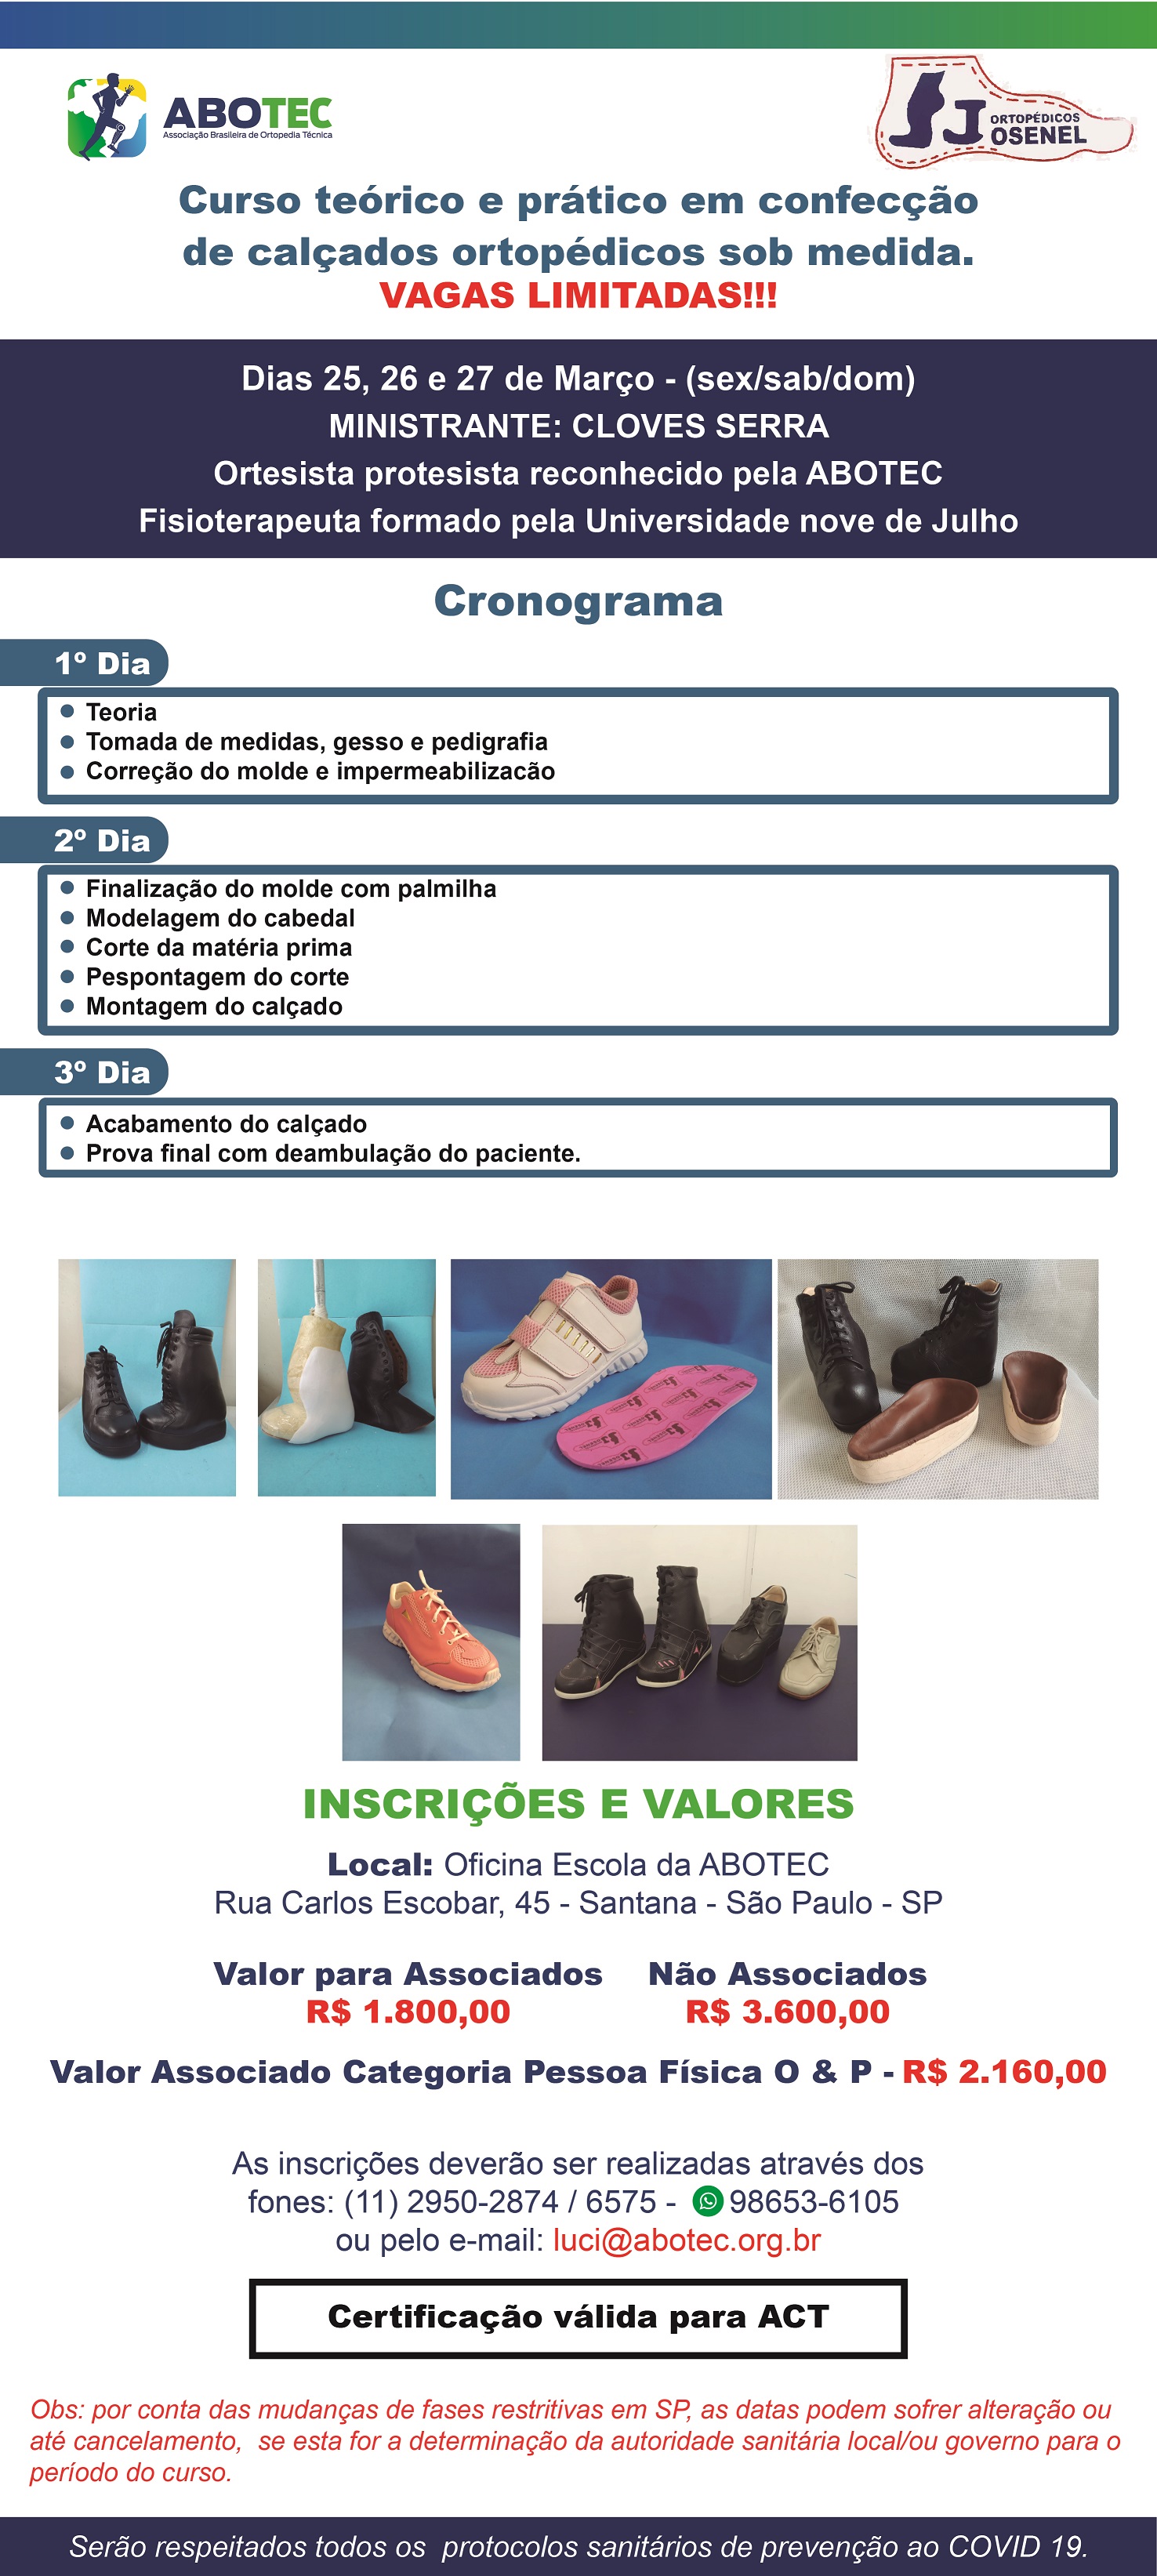 Curso teórico e prático em confecção de calçados ortopédicos sob medida. VAGAS LIMITADAS!!!